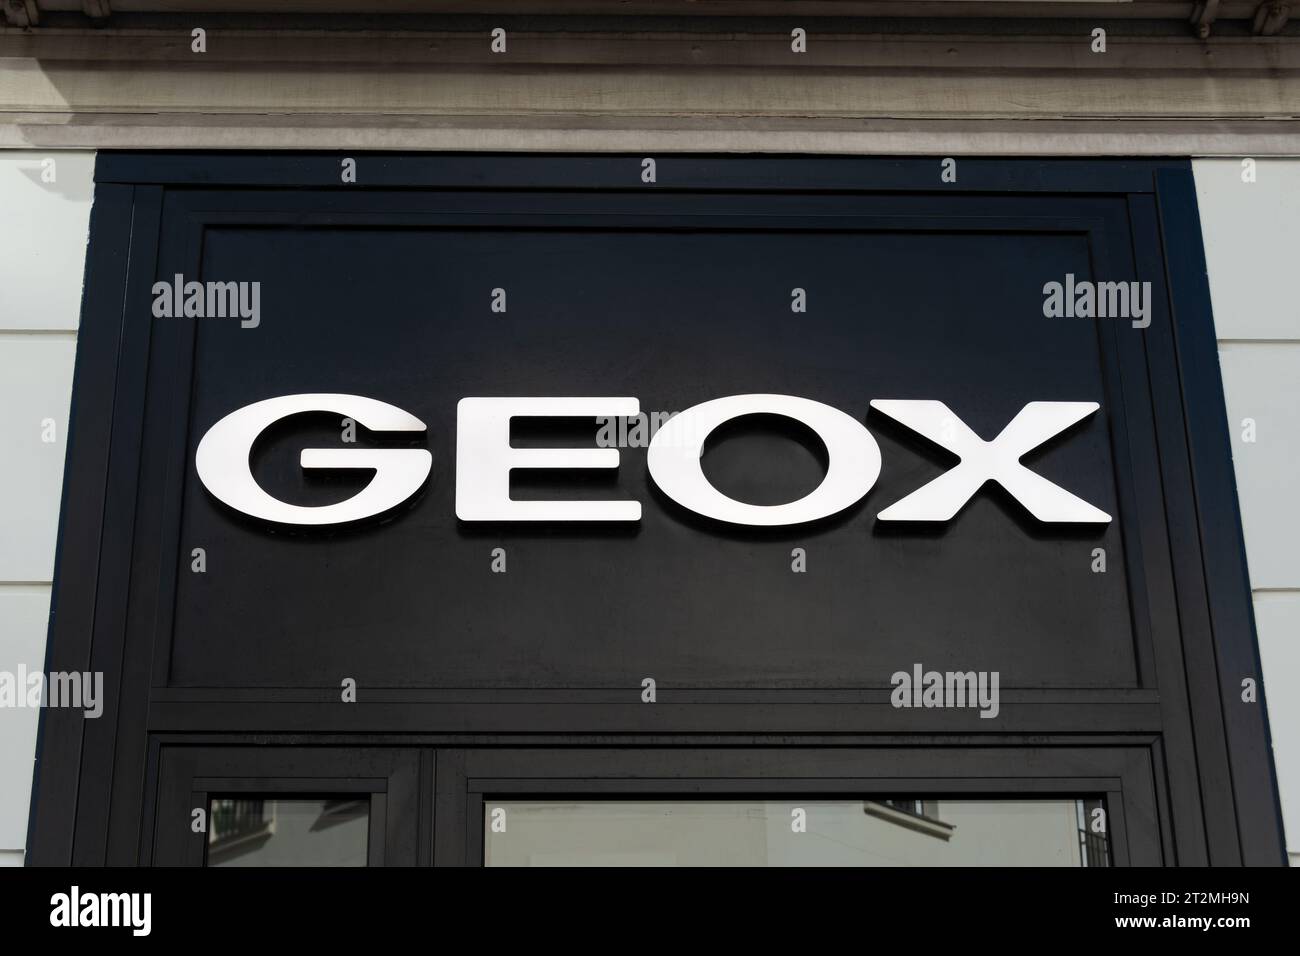 Enseigne et logo d'une boutique Geox. Geox est une entreprise italienne de chaussures et de prêt-à-porter Banque D'Images